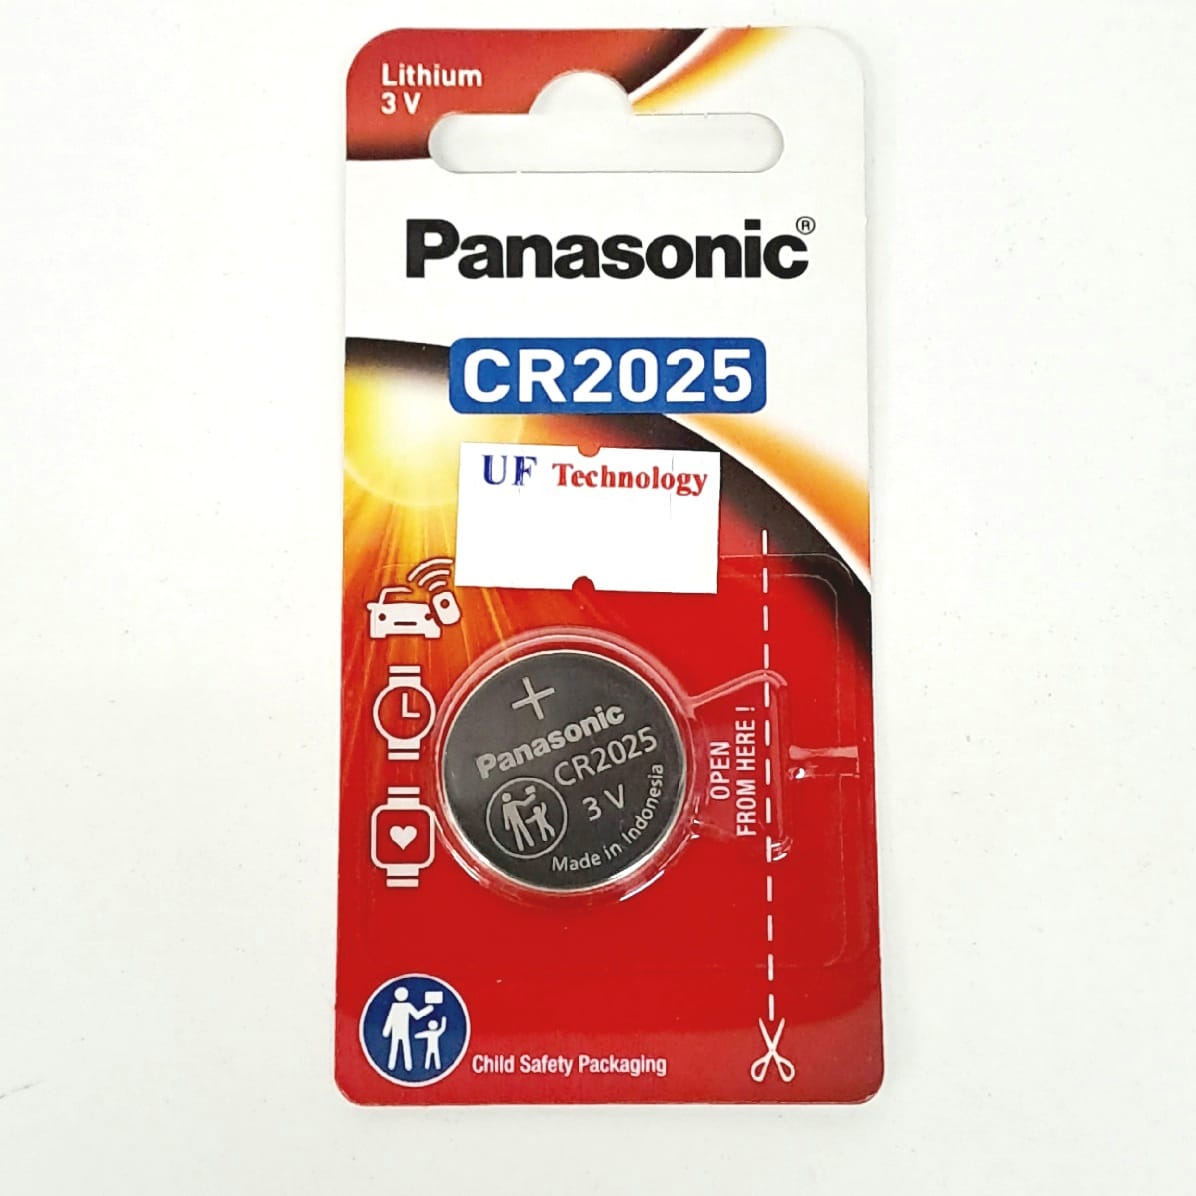 Panasonic CR-2025/1s' 3V Lithium Battery